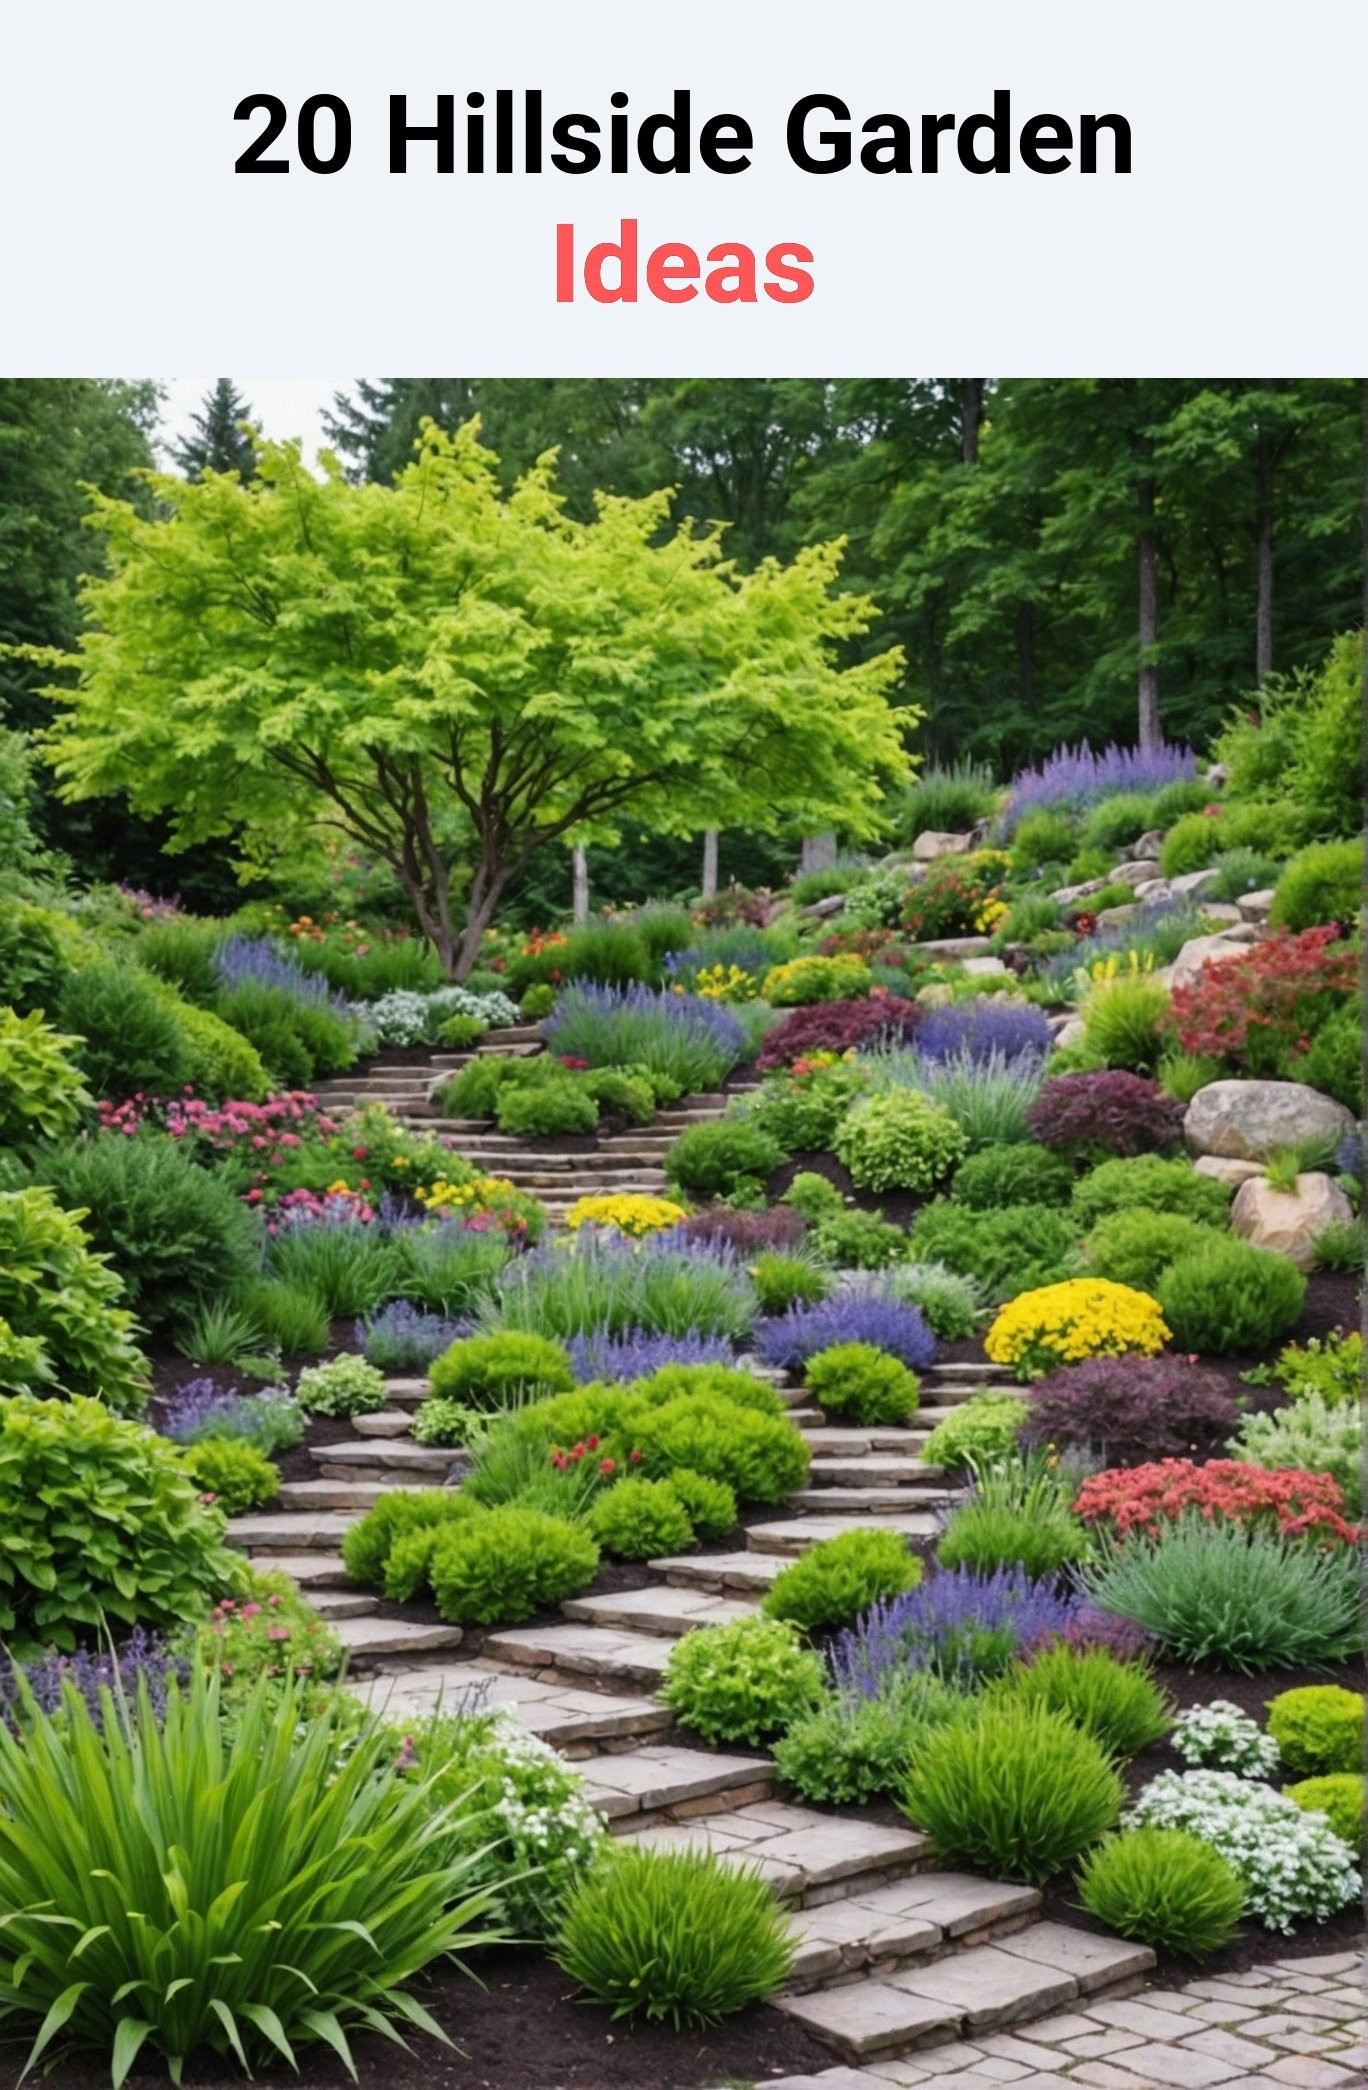 20 Hillside Garden Ideas